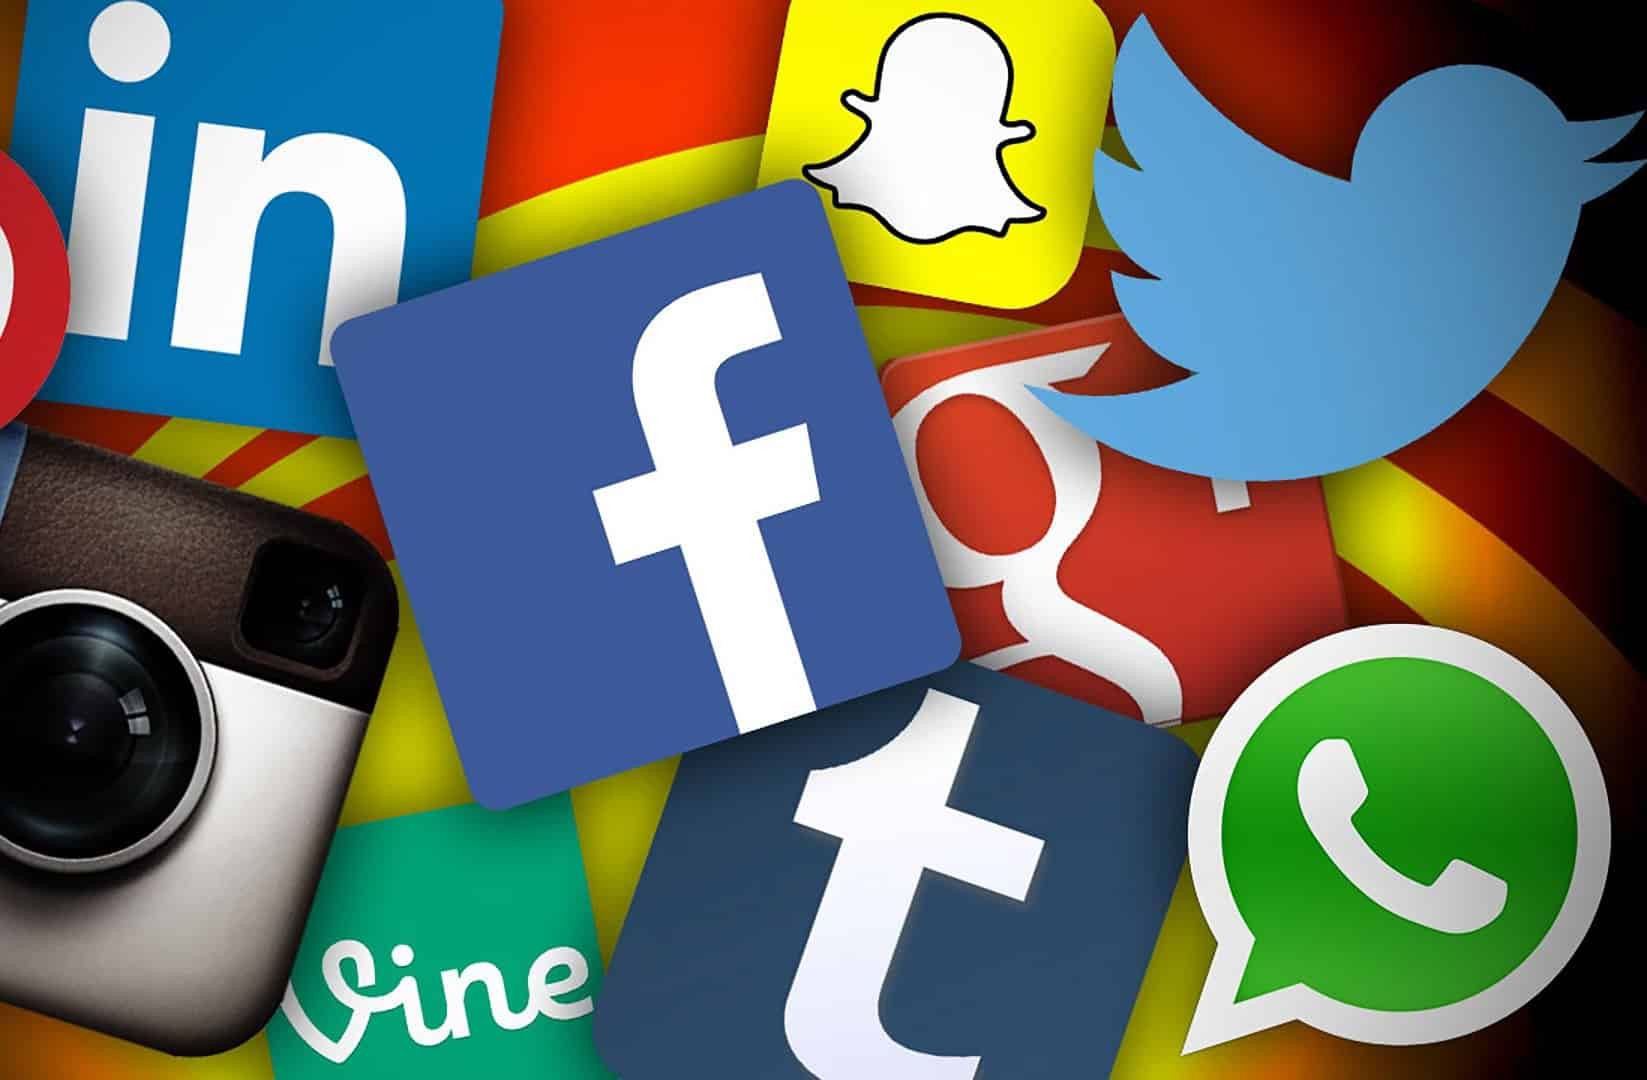 مواقع التواصل الاجتماعي تواجه الحظر بسبب المحتوى الضار البوابة